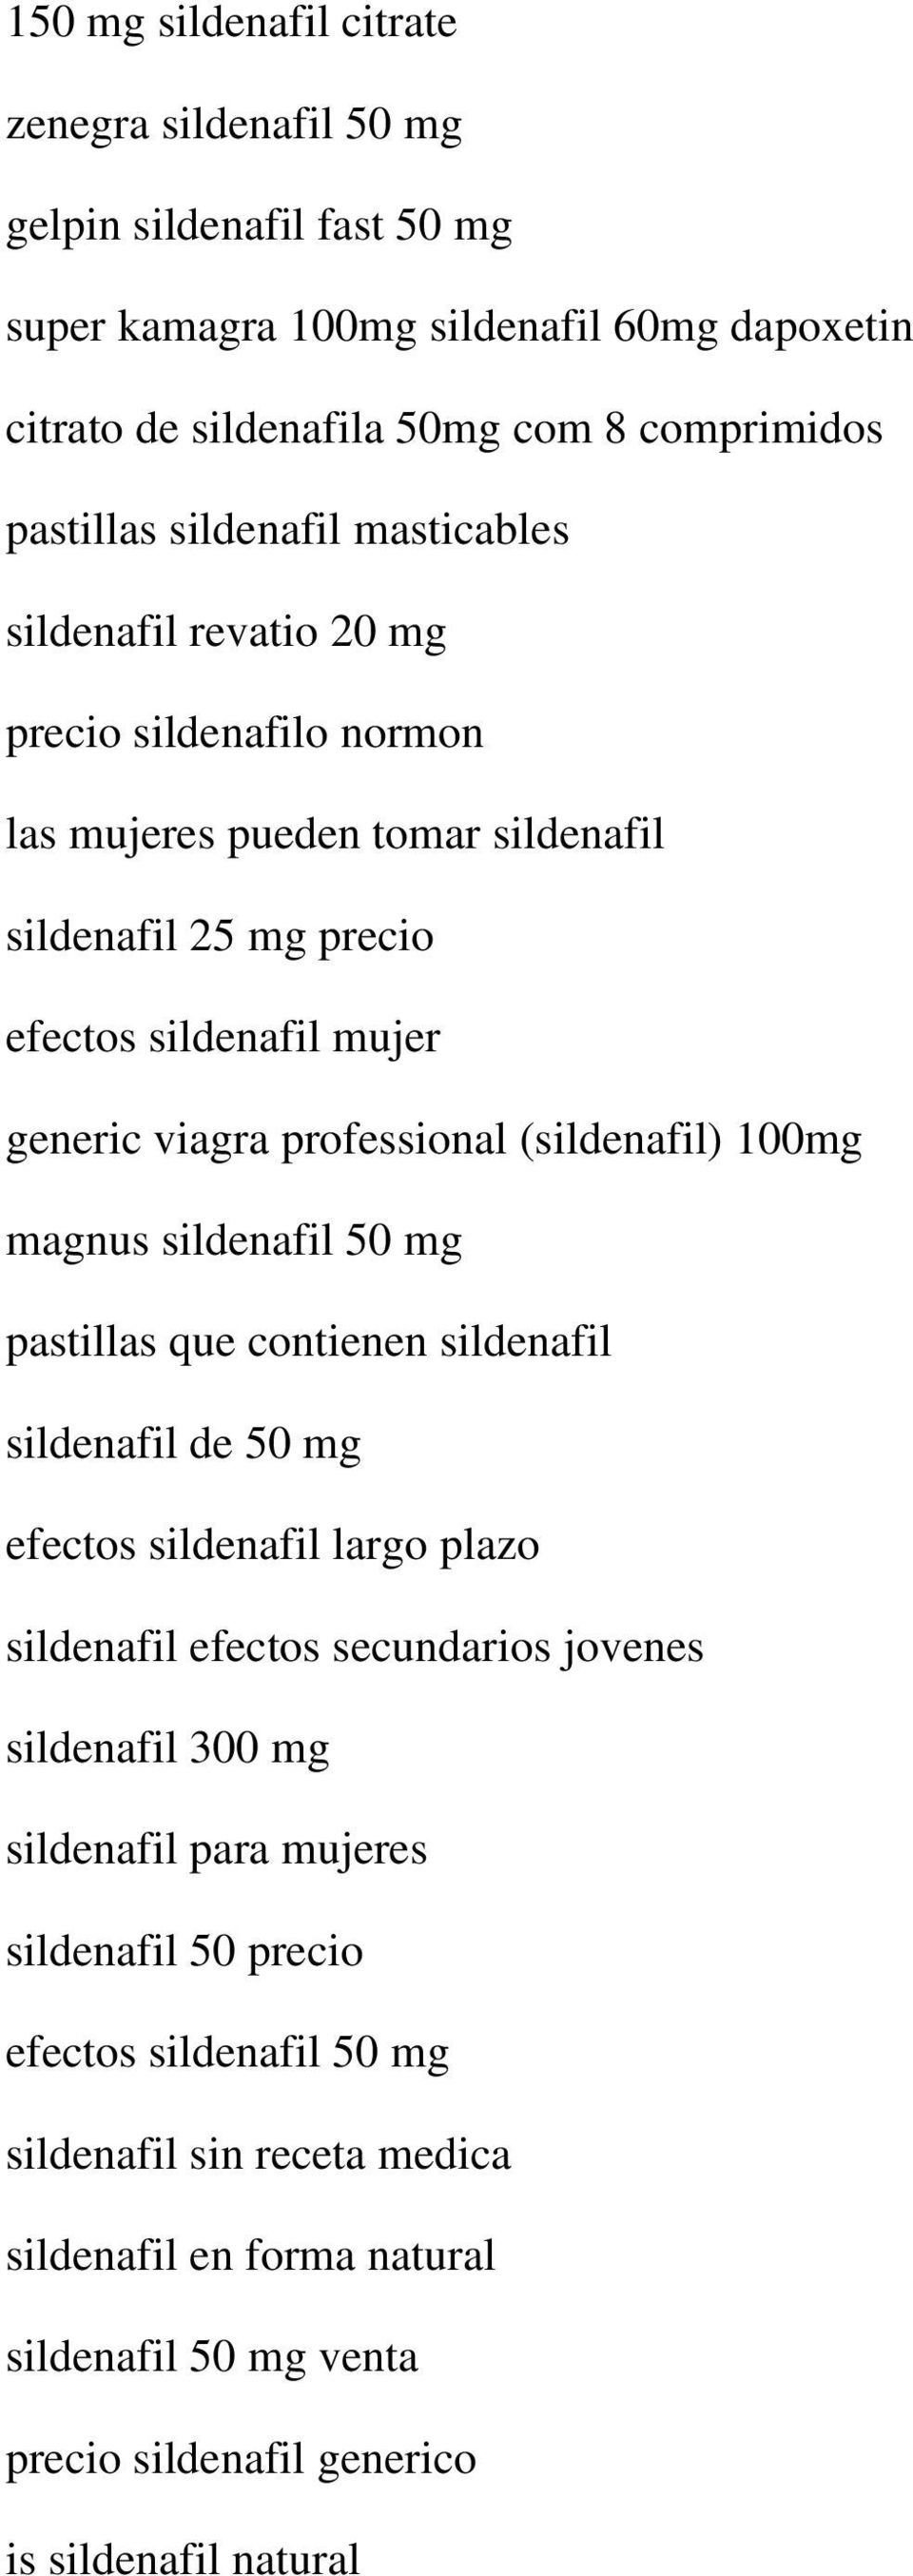 (sildenafil) 100mg magnus sildenafil 50 mg pastillas que contienen sildenafil sildenafil de 50 mg efectos sildenafil largo plazo sildenafil efectos secundarios jovenes sildenafil 300 mg